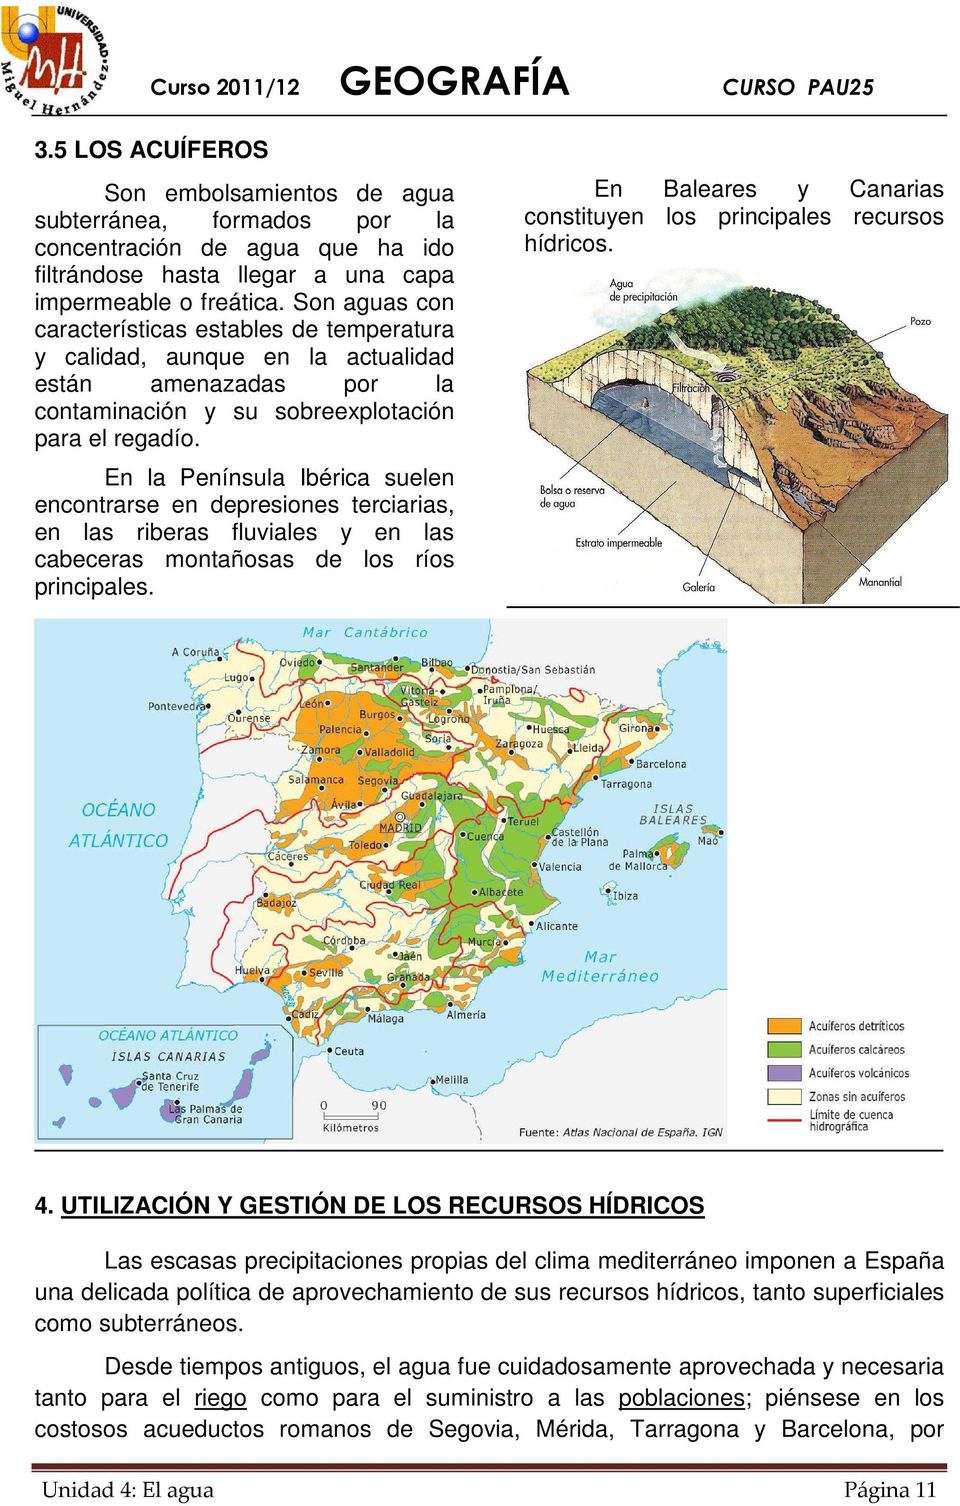 En la Península Ibérica suelen encontrarse en depresiones terciarias, en las riberas fluviales y en las cabeceras montañosas de los ríos principales.